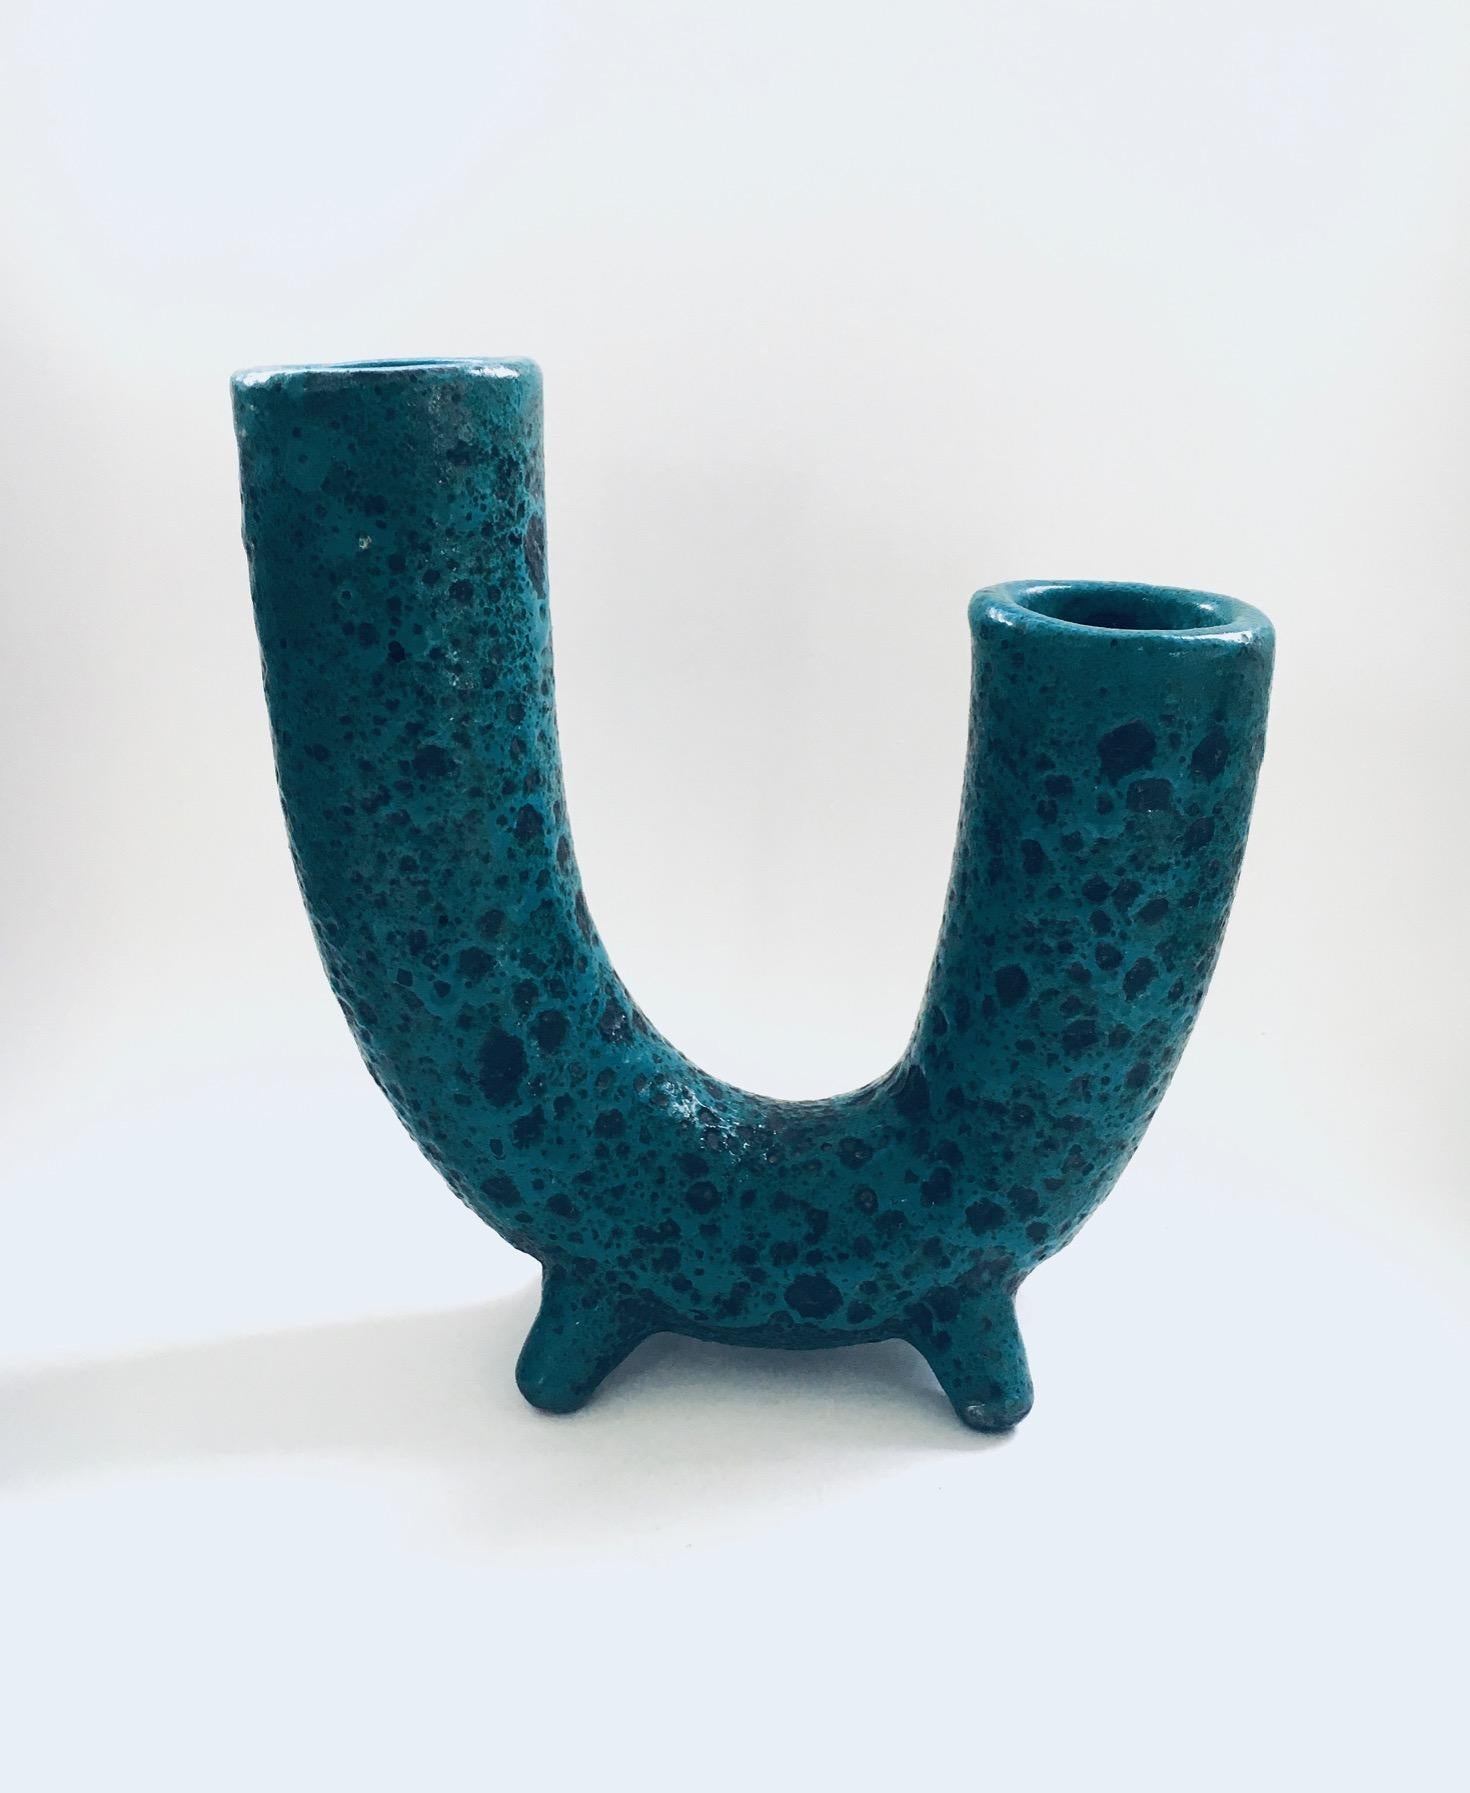 Vintage Midcentury Brutalist in Design Art Pottery Studio Horn Spout model Fat Lava Vase. Fabriqué en Belgique, période des années 1960. Glacis de lave grasse bleu turquoise sur glacis noir mat. Pas de marques. Forme agréable, en très bon état.